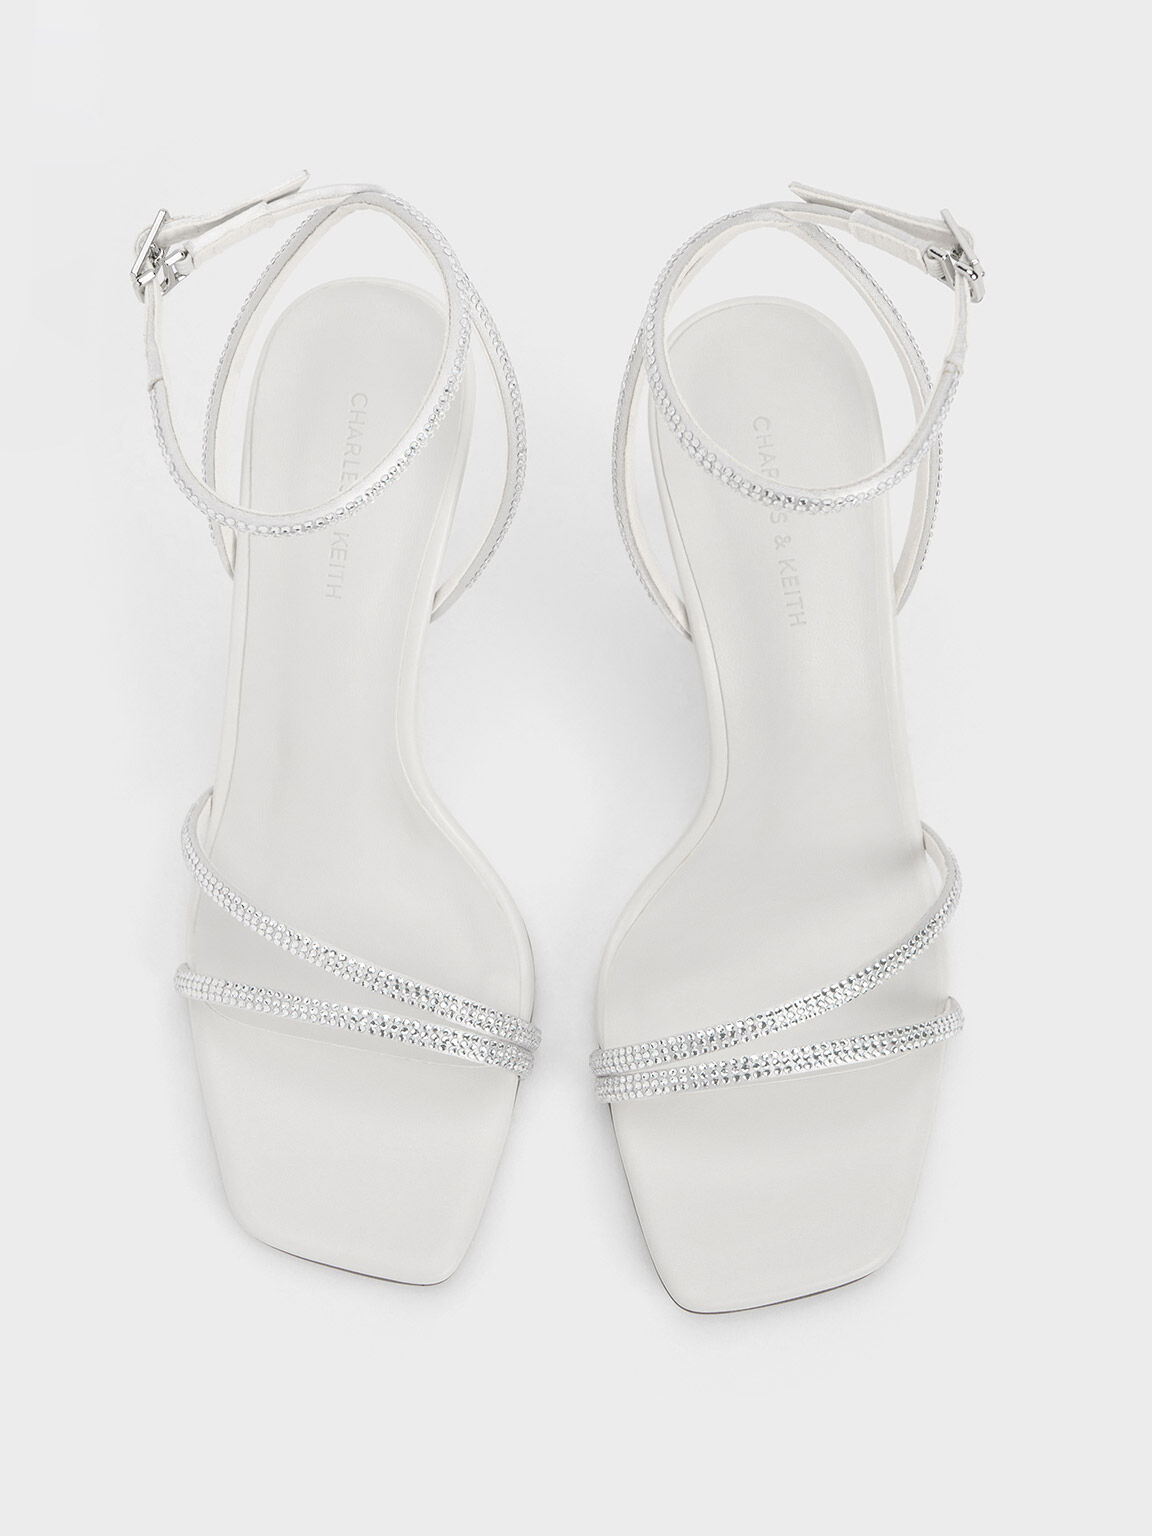 Sandal Stiletto-Heel Satin Crystal-Embellished, White, hi-res